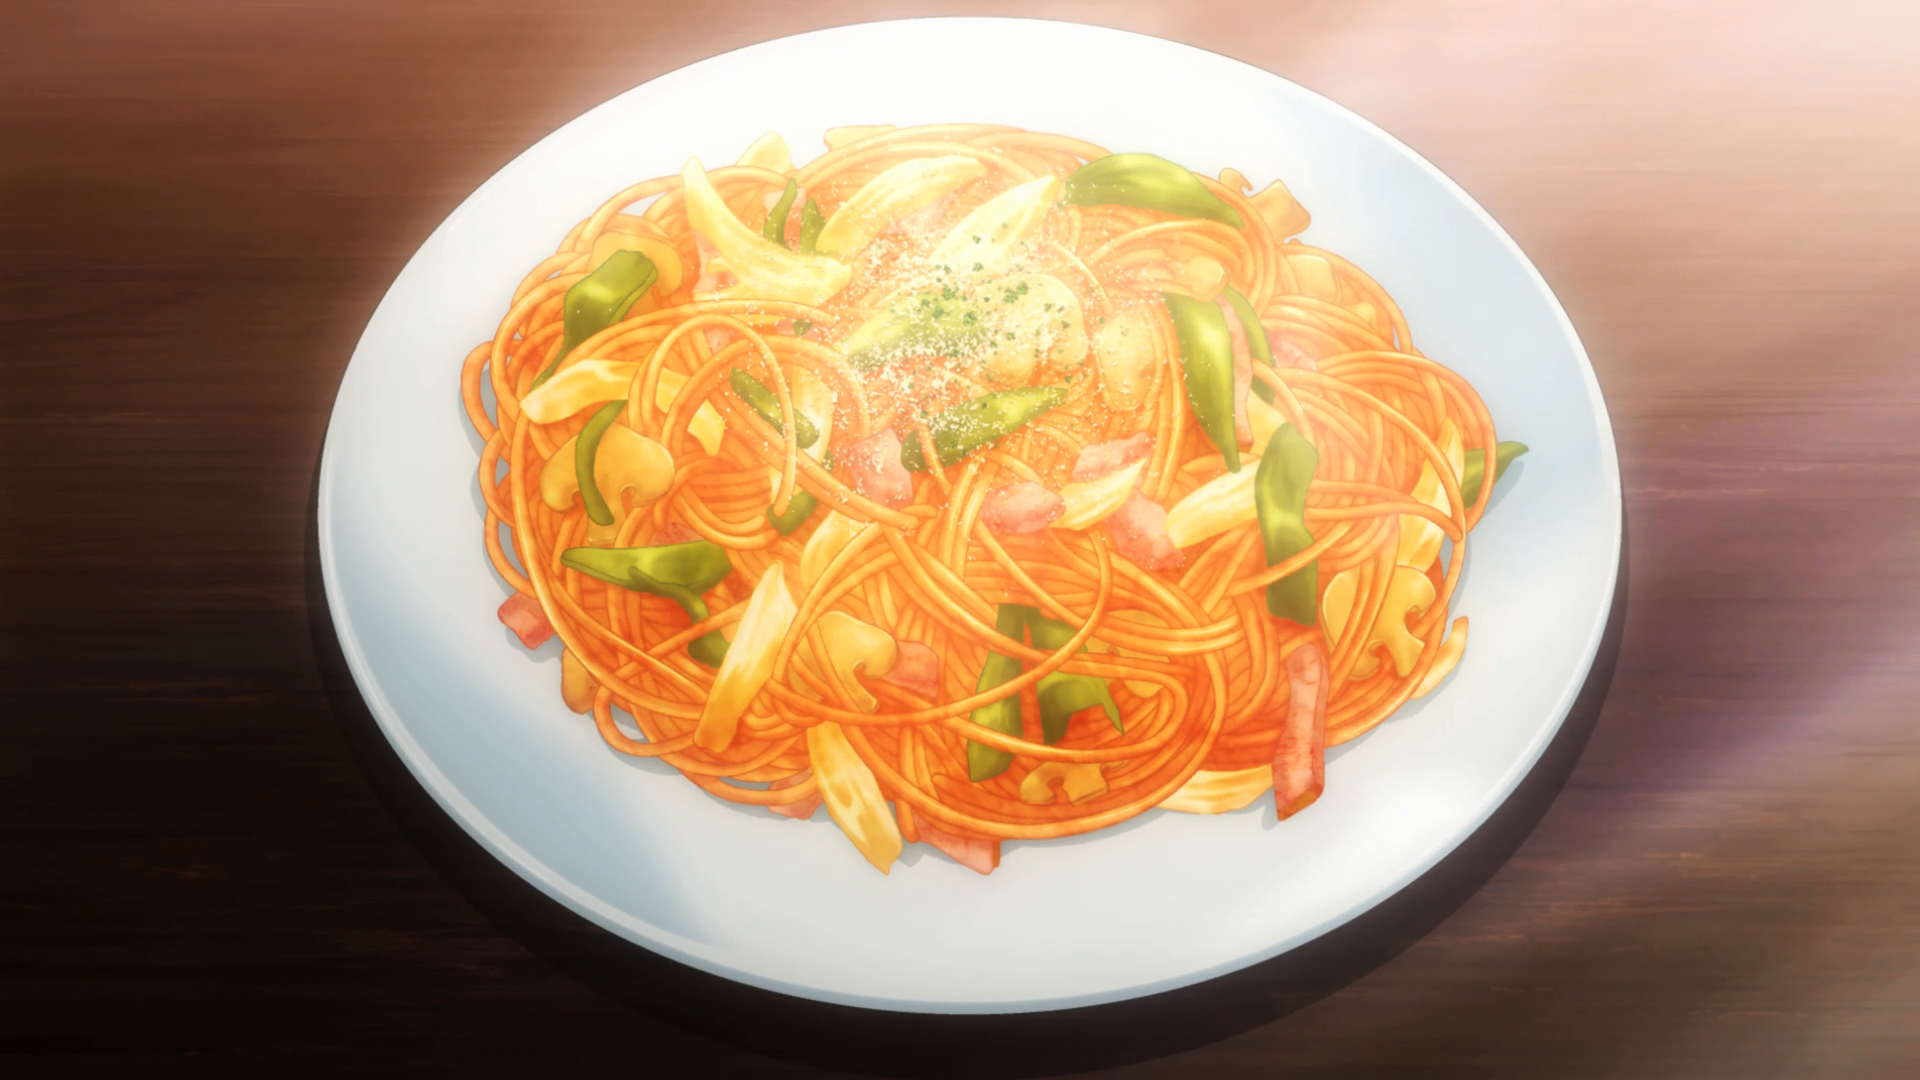 Tomato sauce pasta - Stock Illustration [64306366] - PIXTA